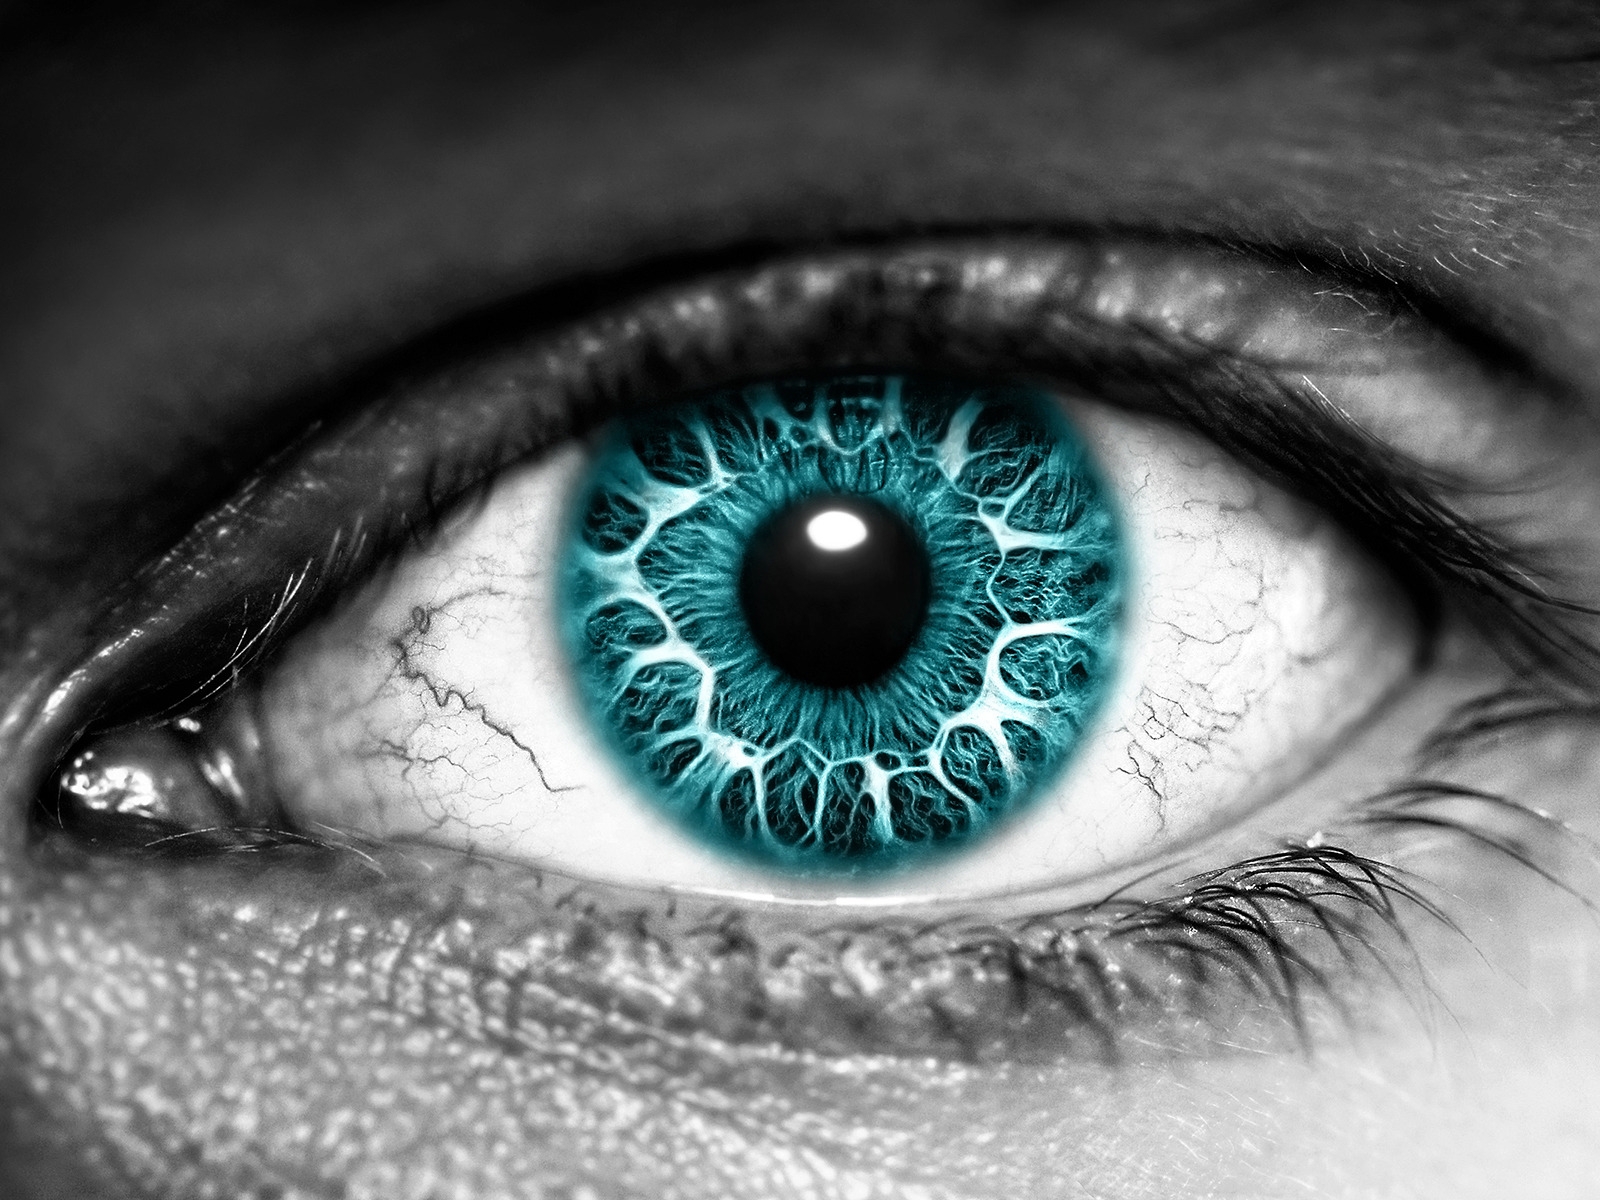 Azure Eye for 1600 x 1200 resolution